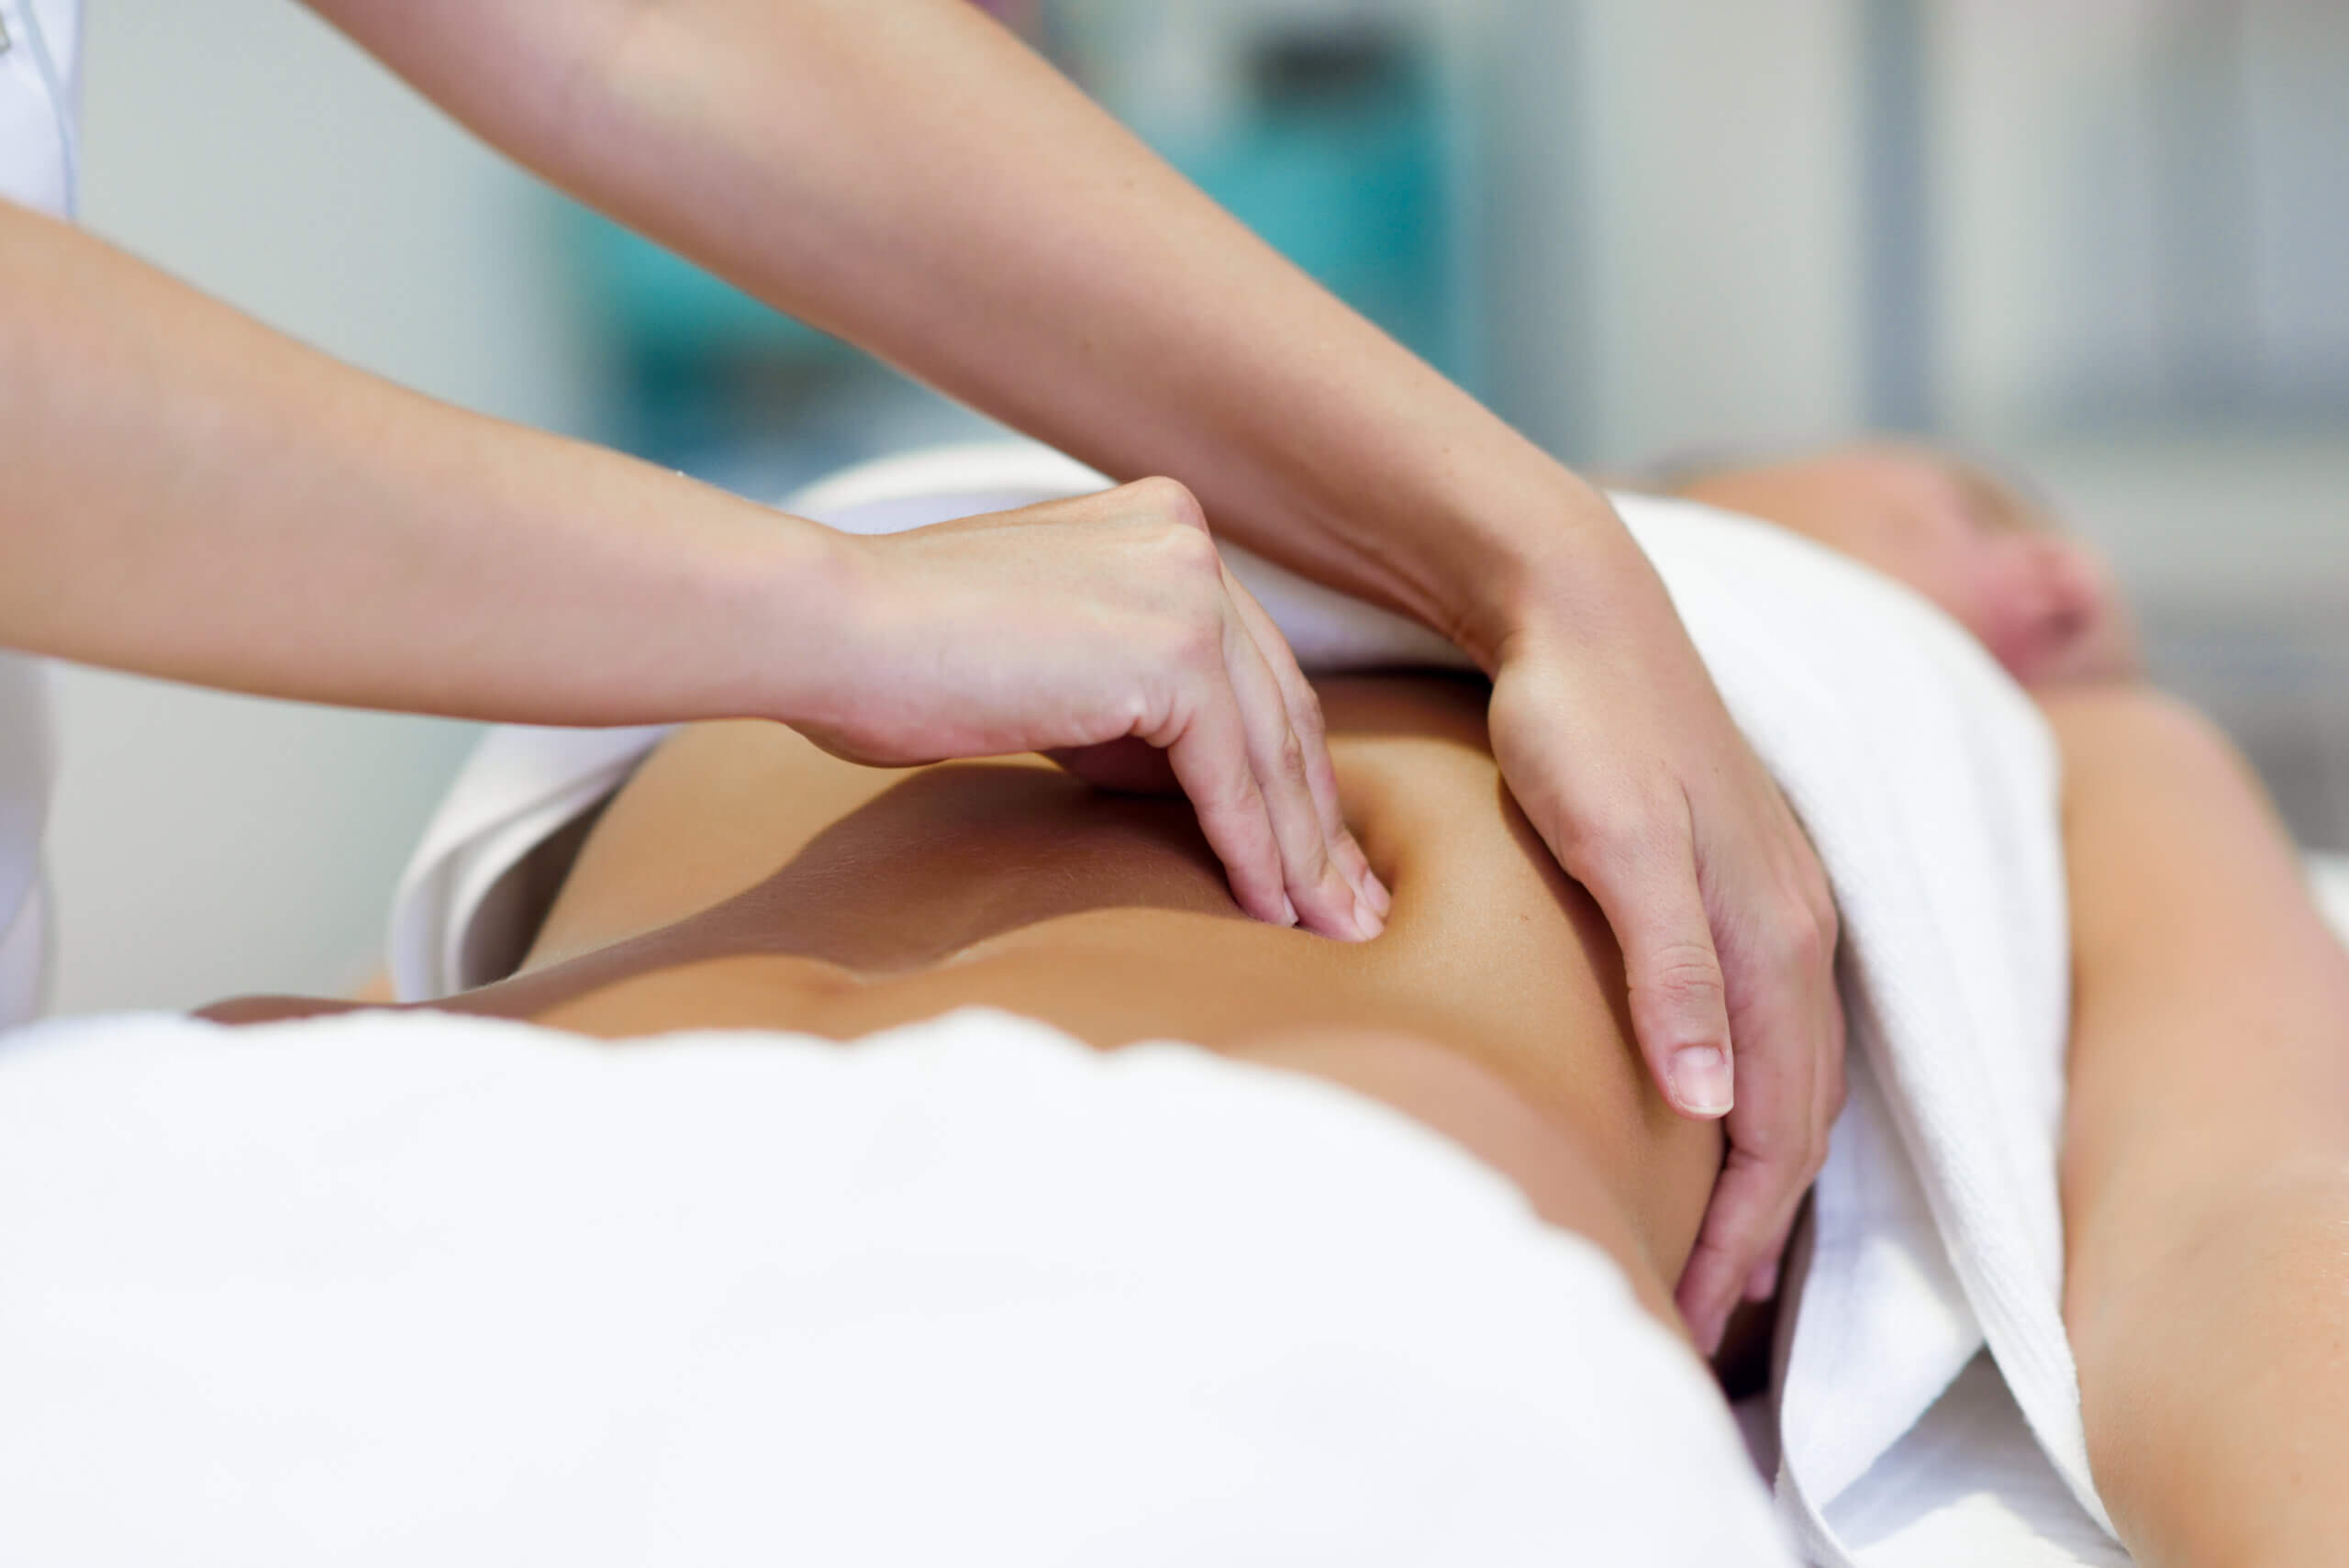 Massage bien-être du ventre pour améliorer le bon fonctionnement des organes, le transit, les tensions émoionnelles.